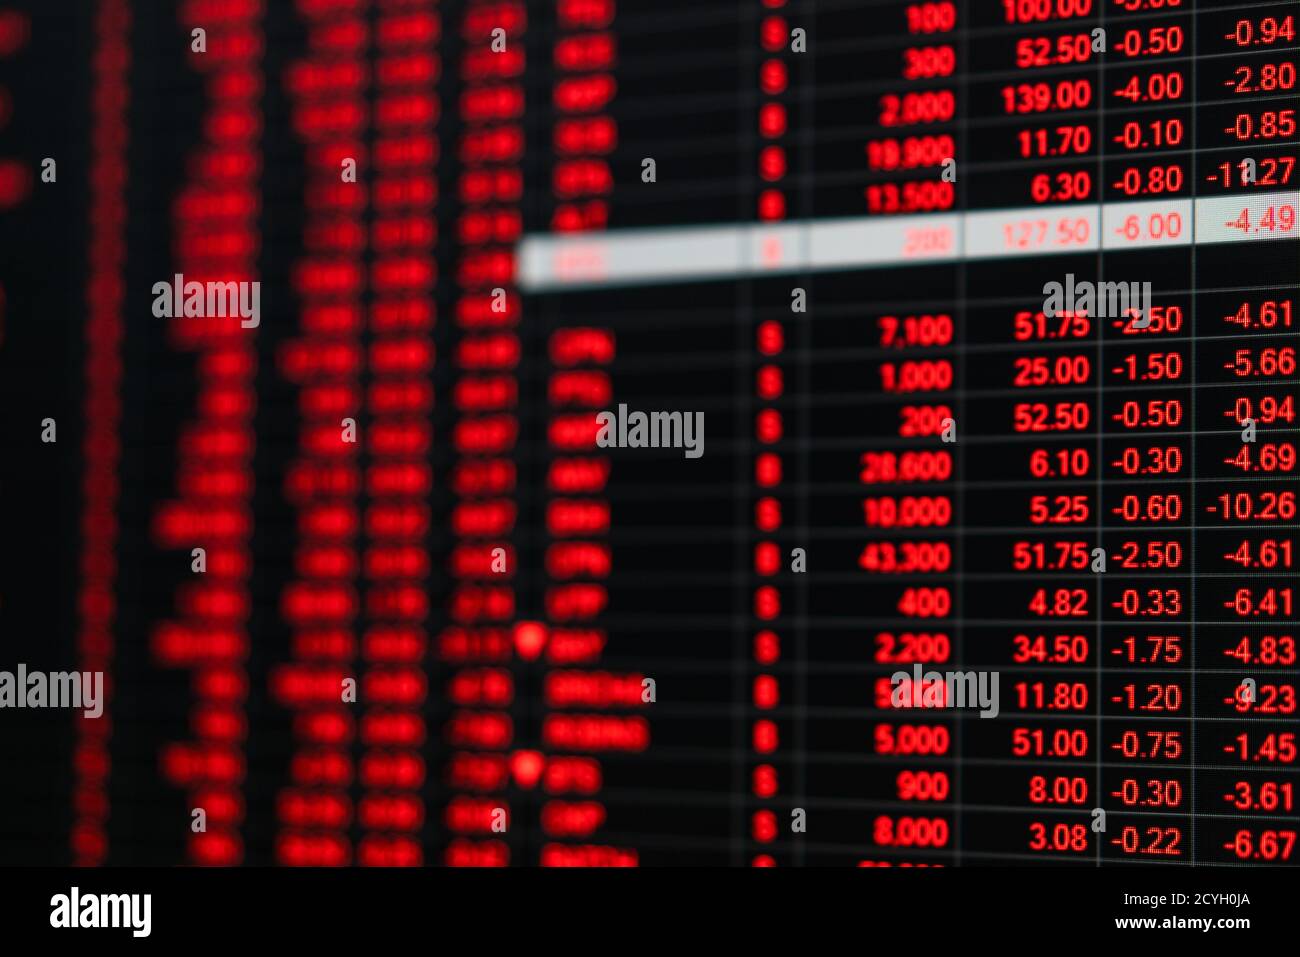 Börsenkurs Ticker Board in Baisse Börsentag. Aktienmarktausschuss zeigen Finanzkrise. Instabile nervöse Emotion der Aktienhändler Stockfoto